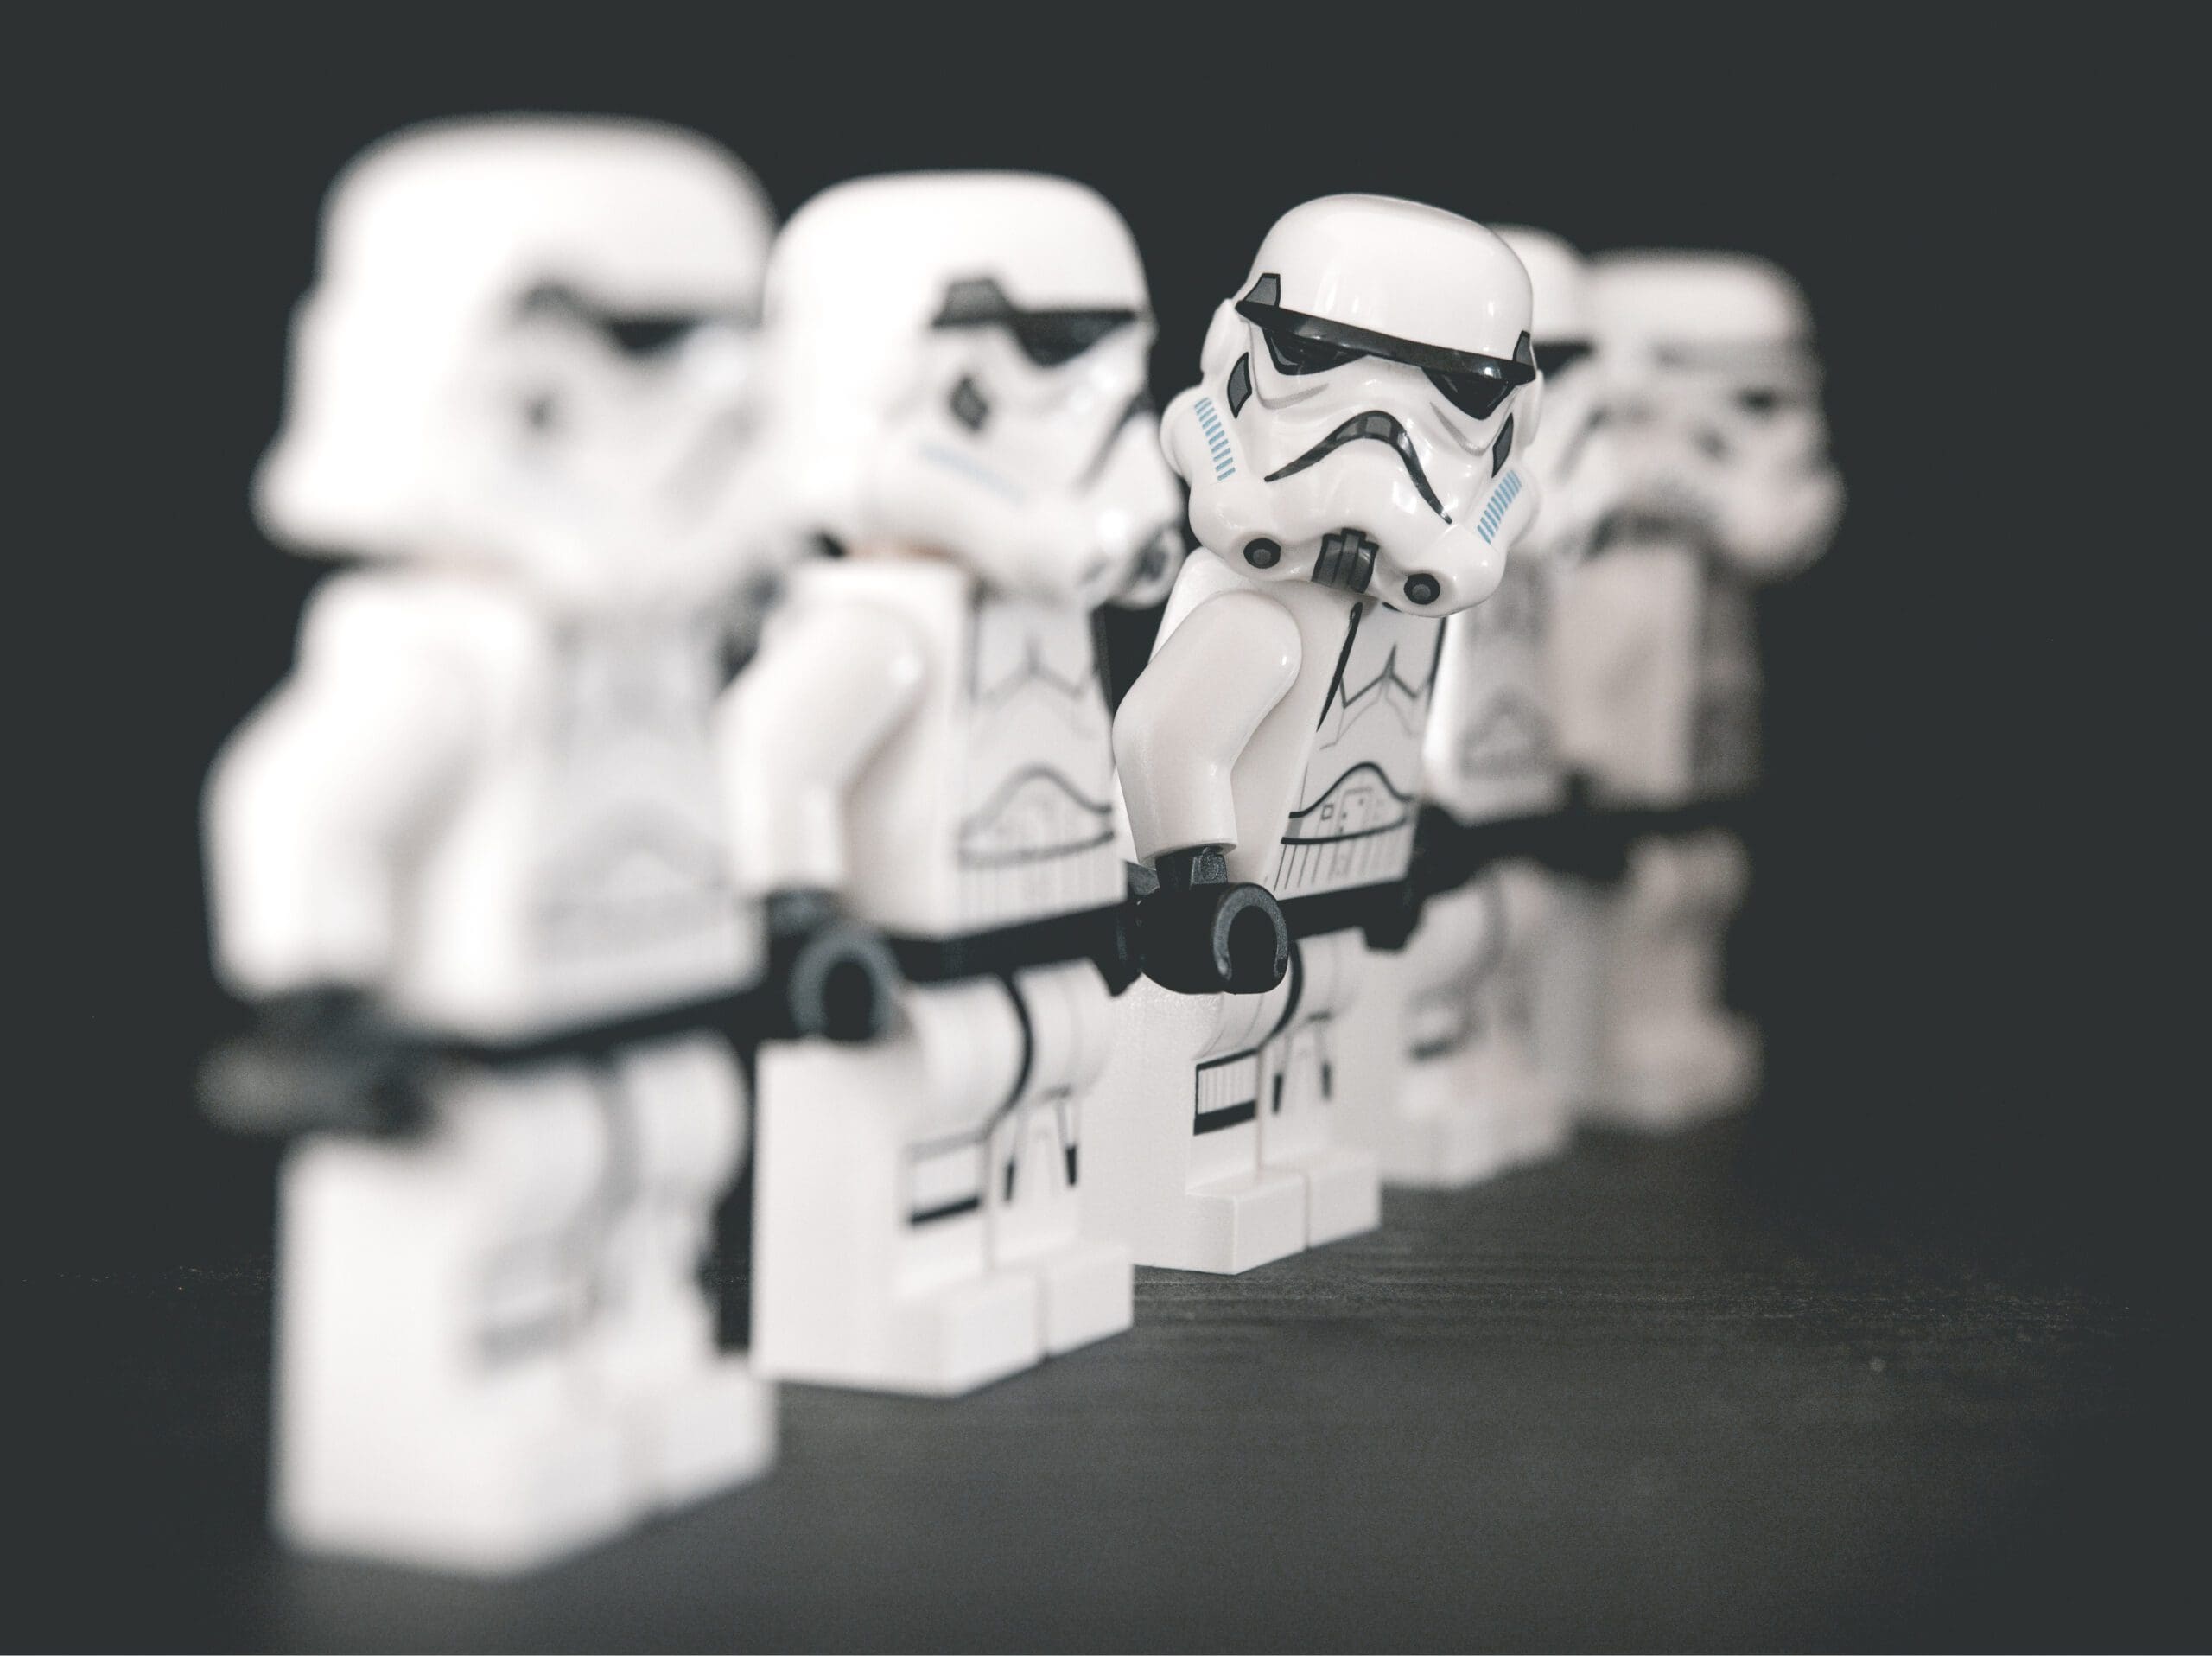 Beginnen met beleggen - LEGO Star Wars